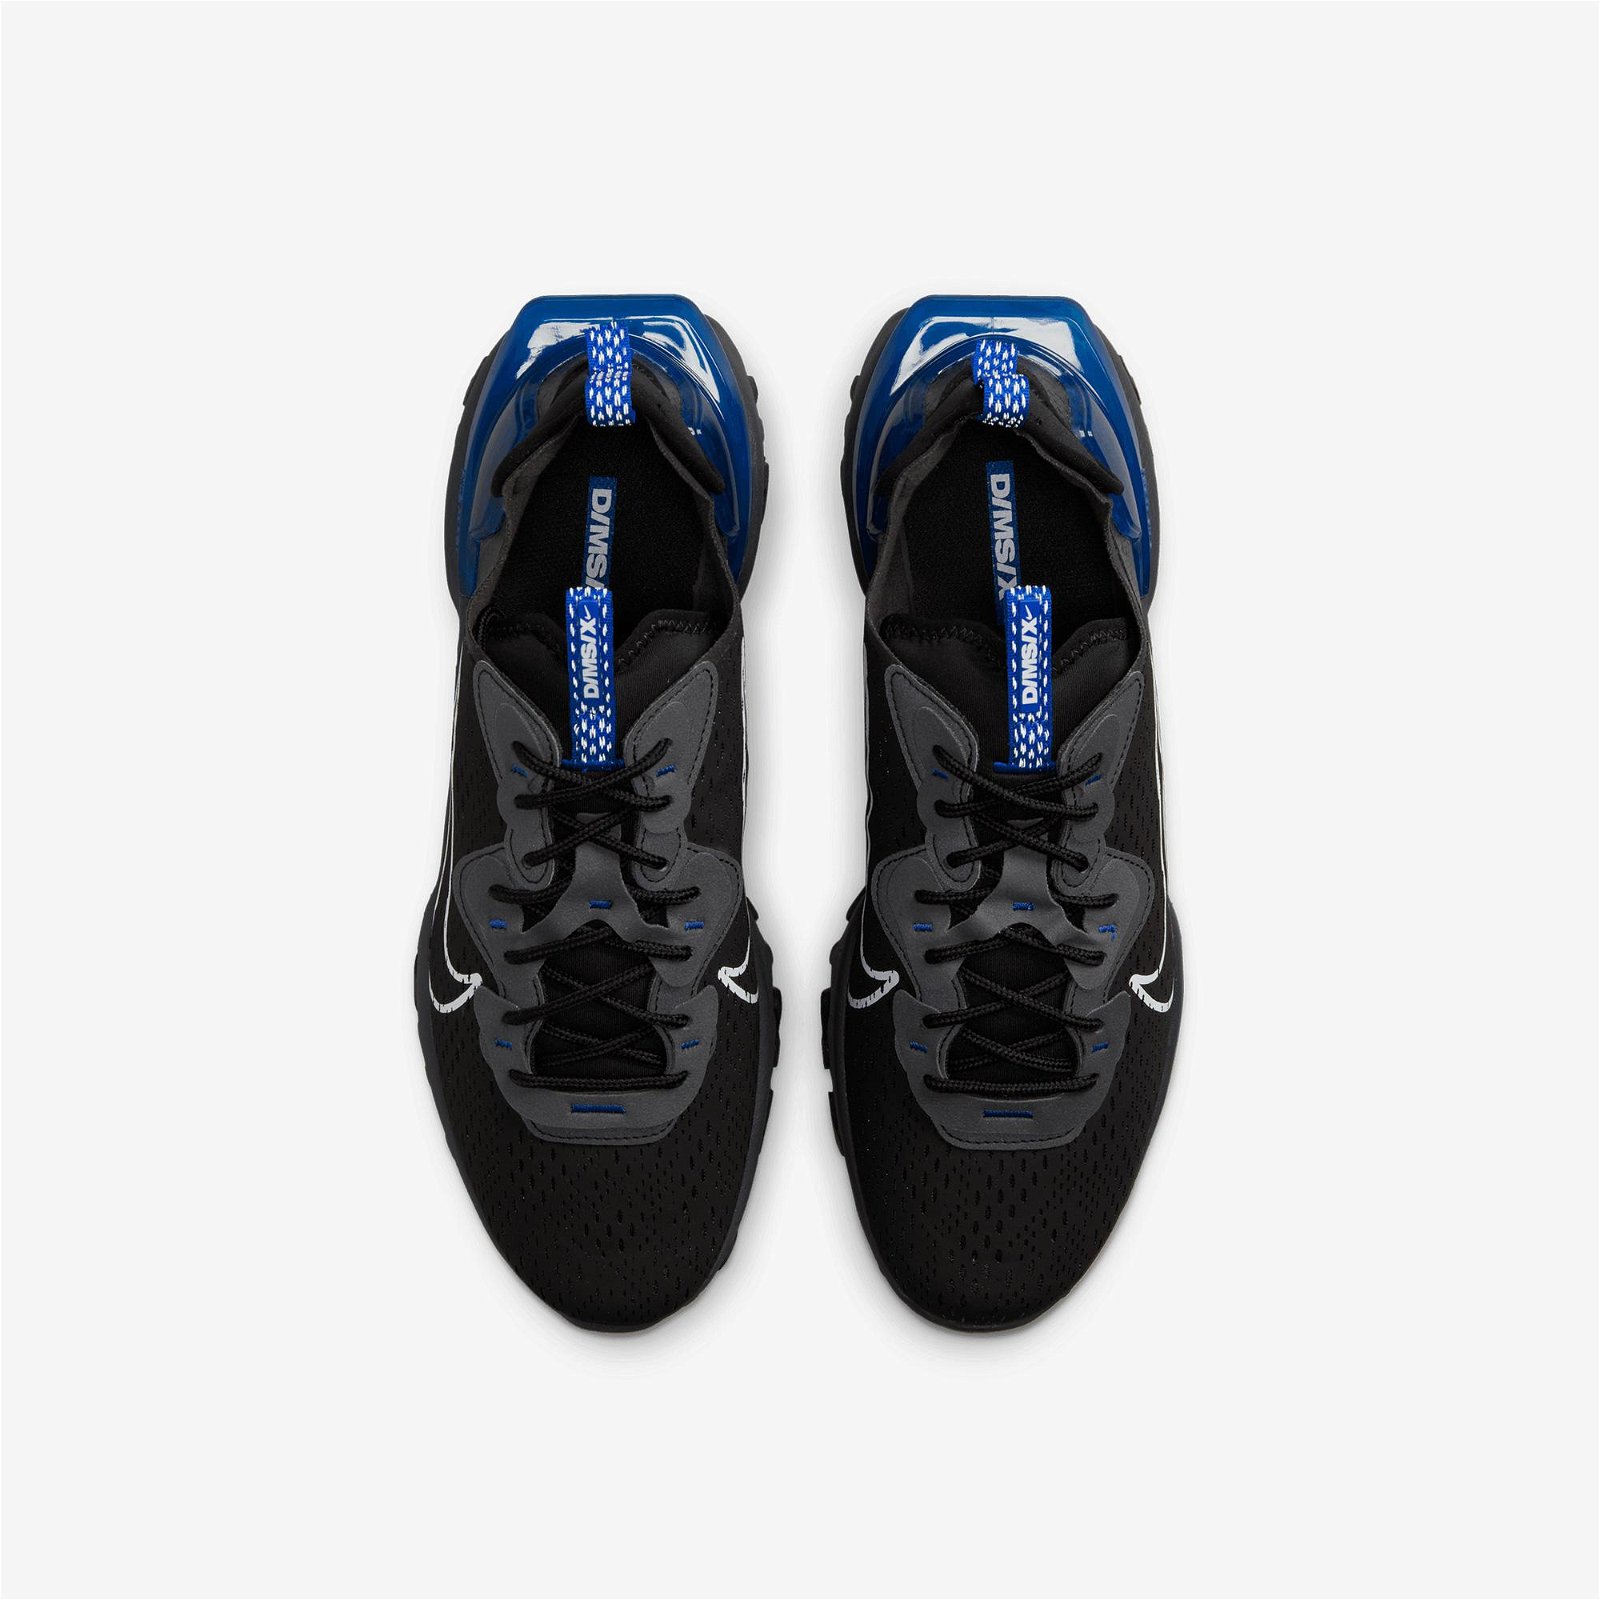 Nike React Vision Erkek Siyah Spor Ayakkabı